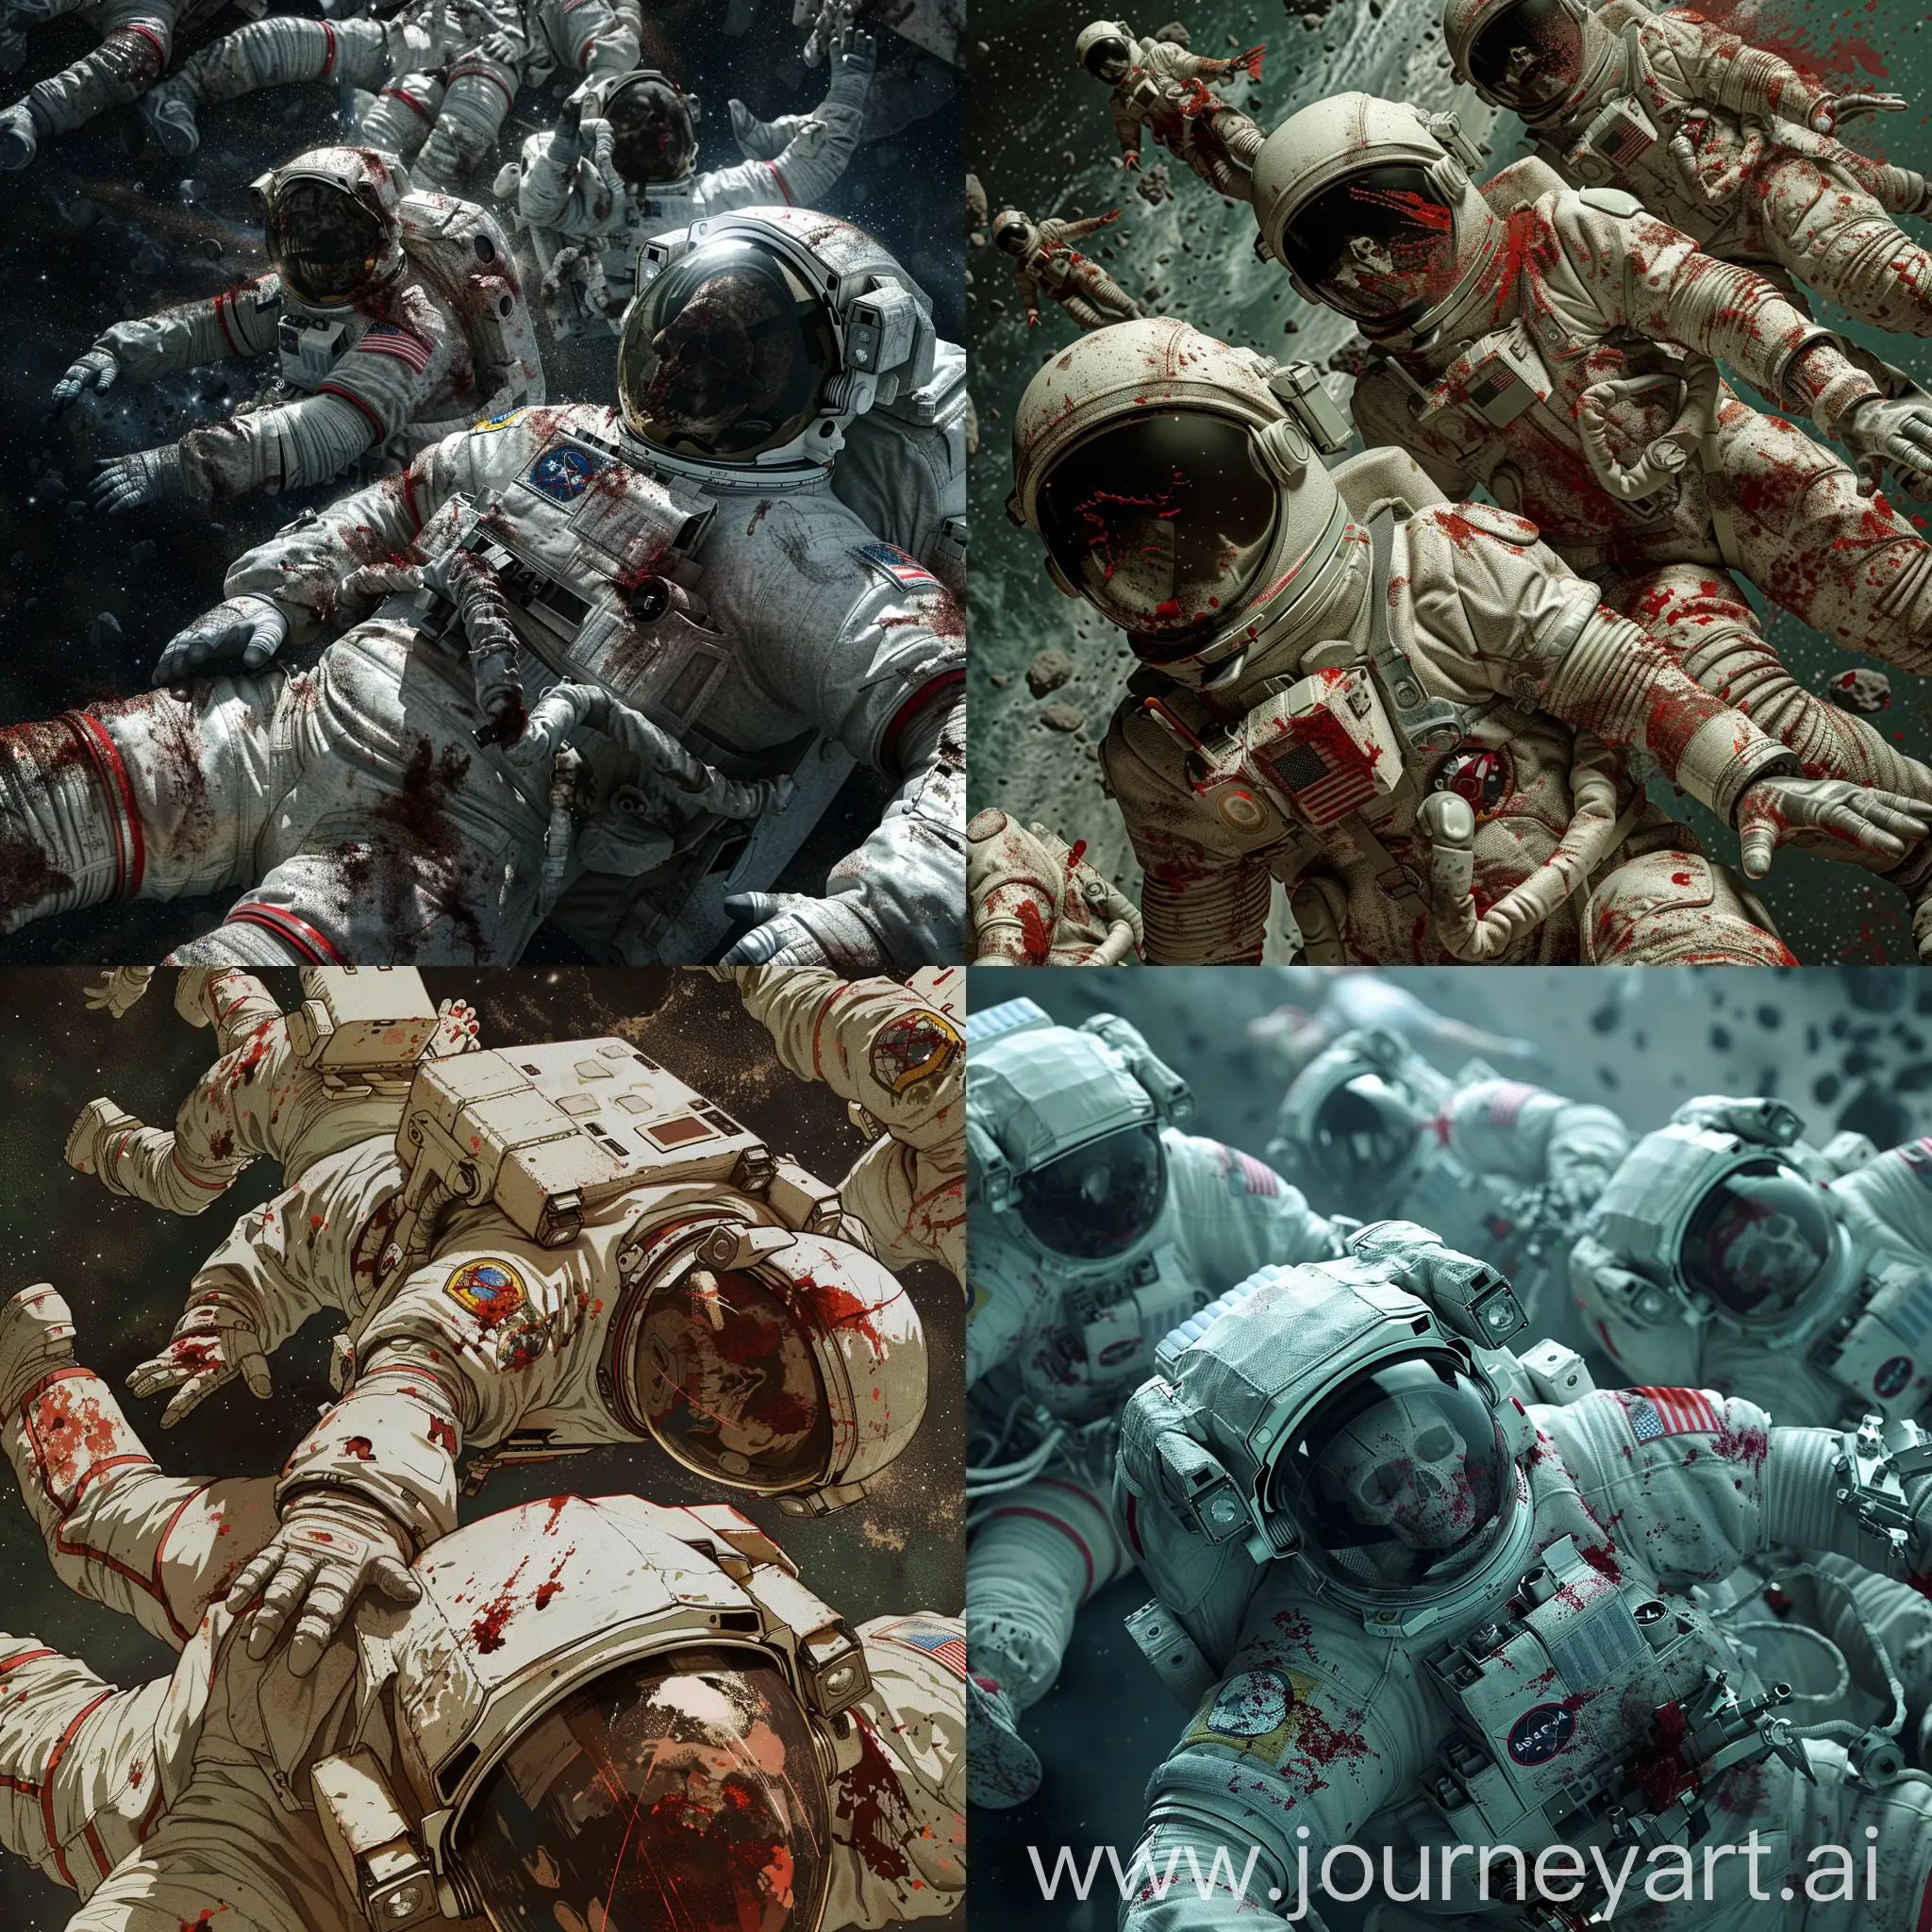 几个宇航员的尸体在太空中缓缓漂浮，他们的太空服已经破损，头盔裂开，并且沾满血迹